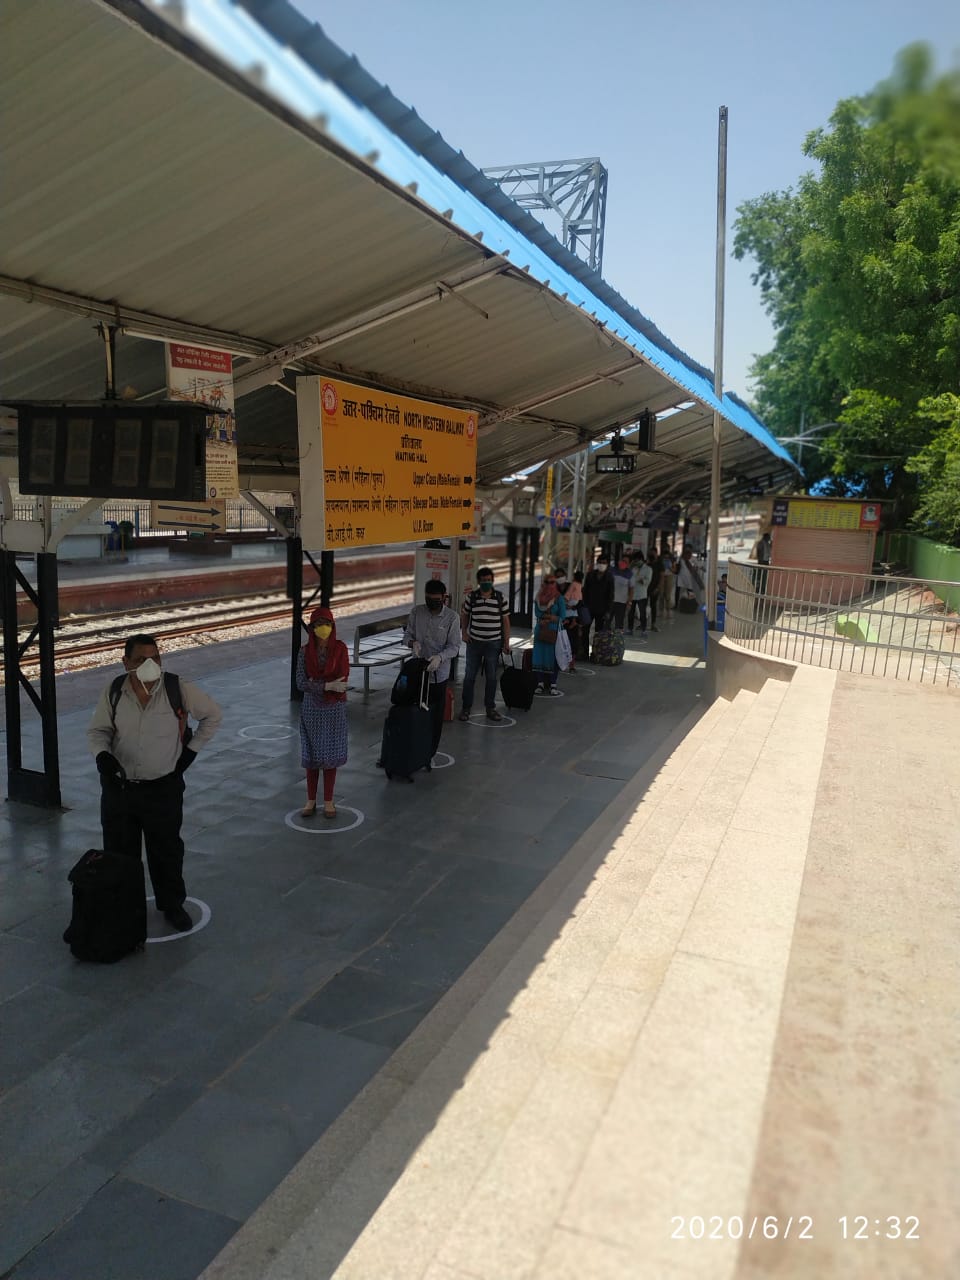 Bikaner-Delhi train starts, relief